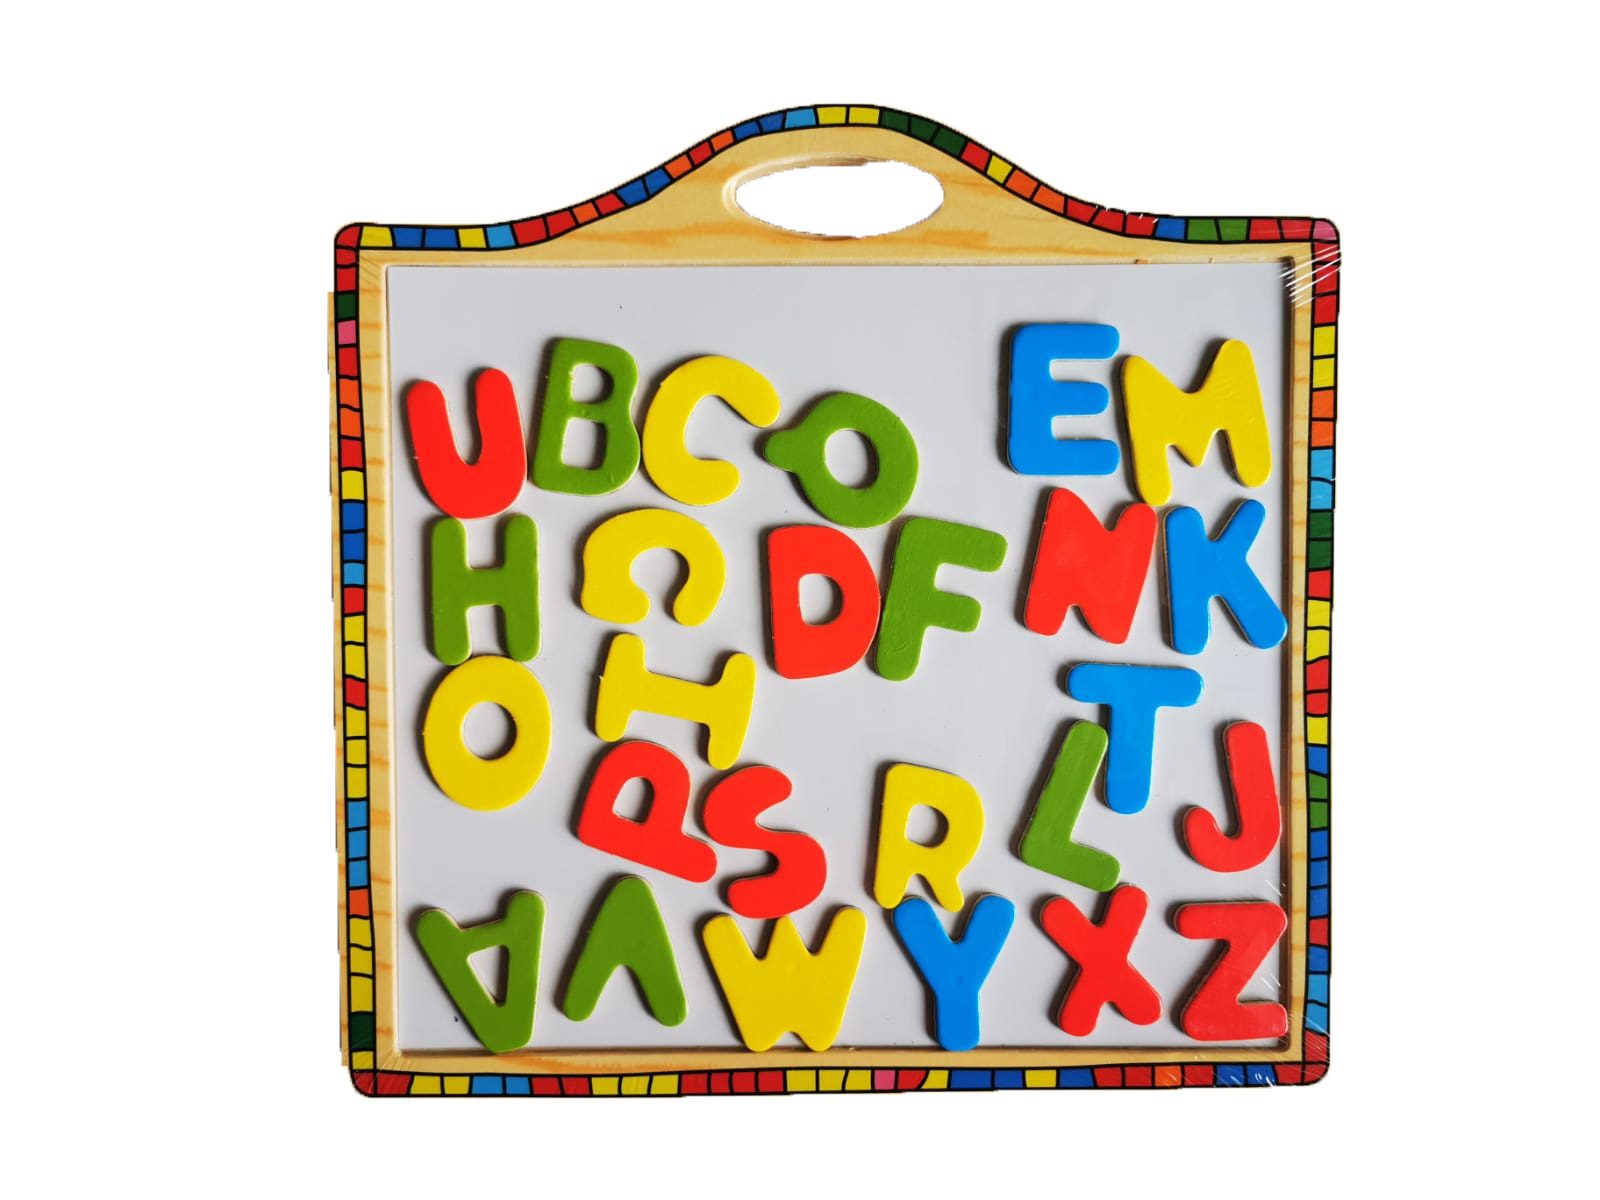  Setul contine: tablita  , puzzle magnetic .
Imprimare viu colorată, naturală, în condiții de siguranță pentru copii. Puzzle-ul magnetic ușor de manevrat și de lipit pe planșă asigură ore de distracție! Cutia din lemn este ușor de transportat! Cei mici o pot lua cu ei în călătorii. Copiii pot afla mai multe despre alfabet cu ajutorul acestei tableta.

 